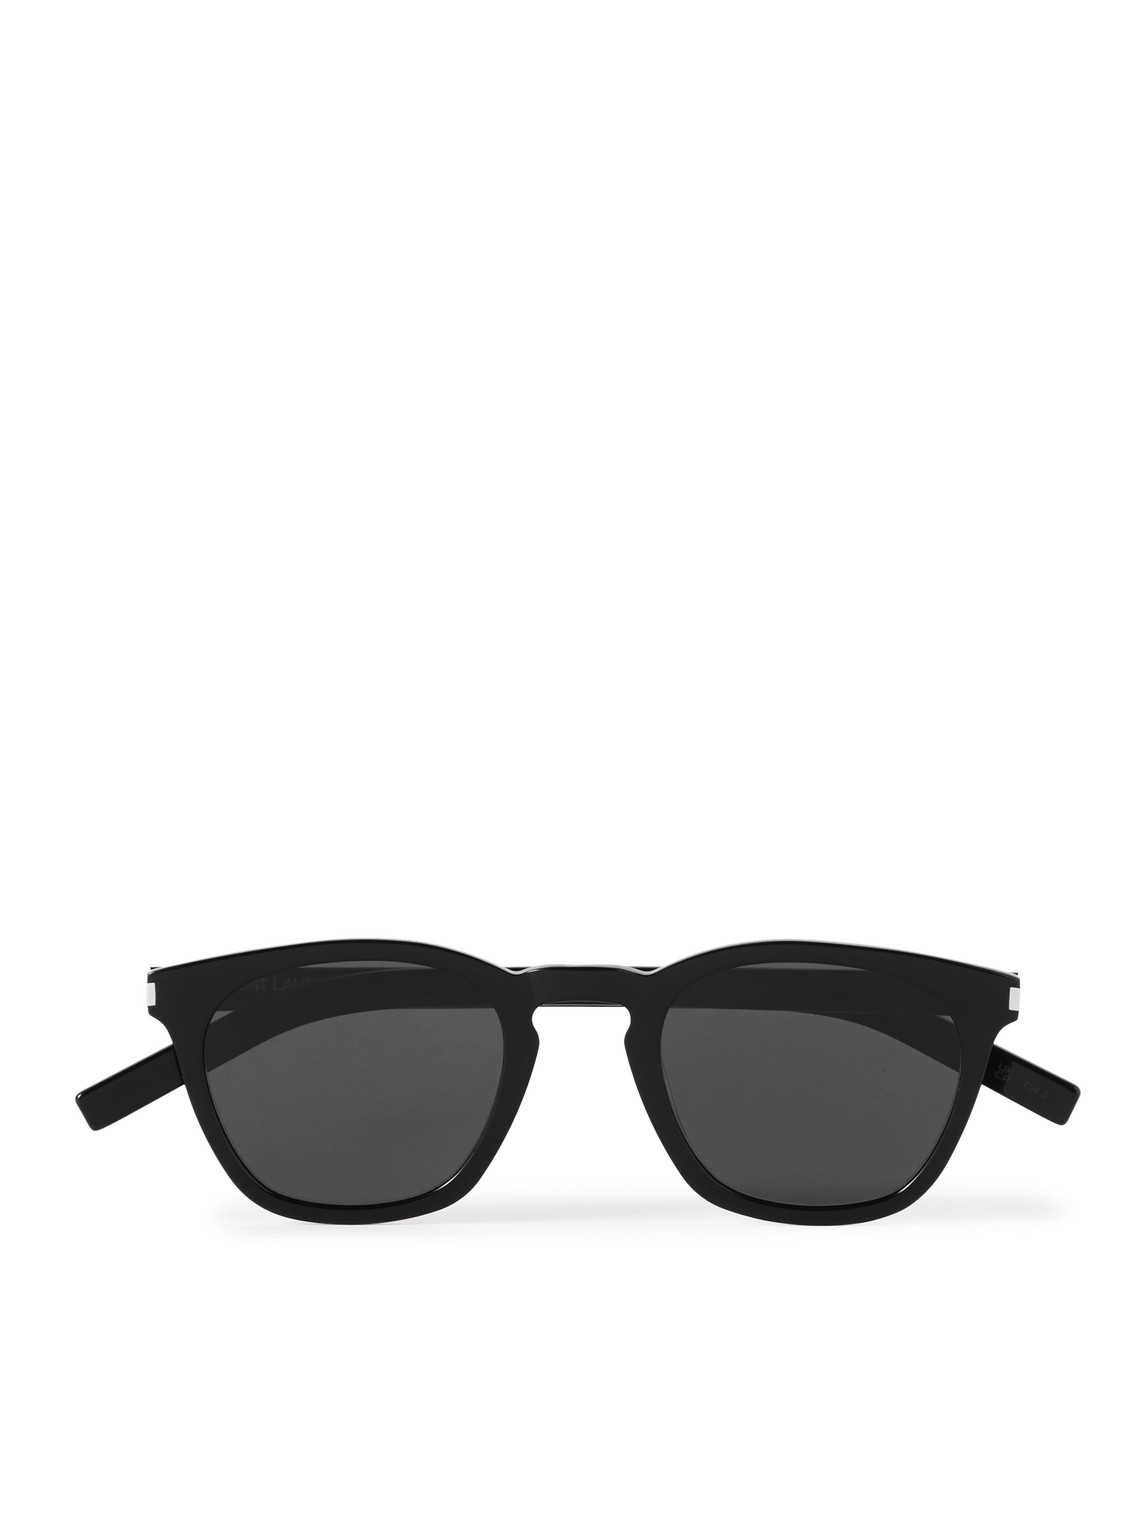 SAINT LAURENT - D-Frame Acetate Sunglasses - Men - Black von SAINT LAURENT